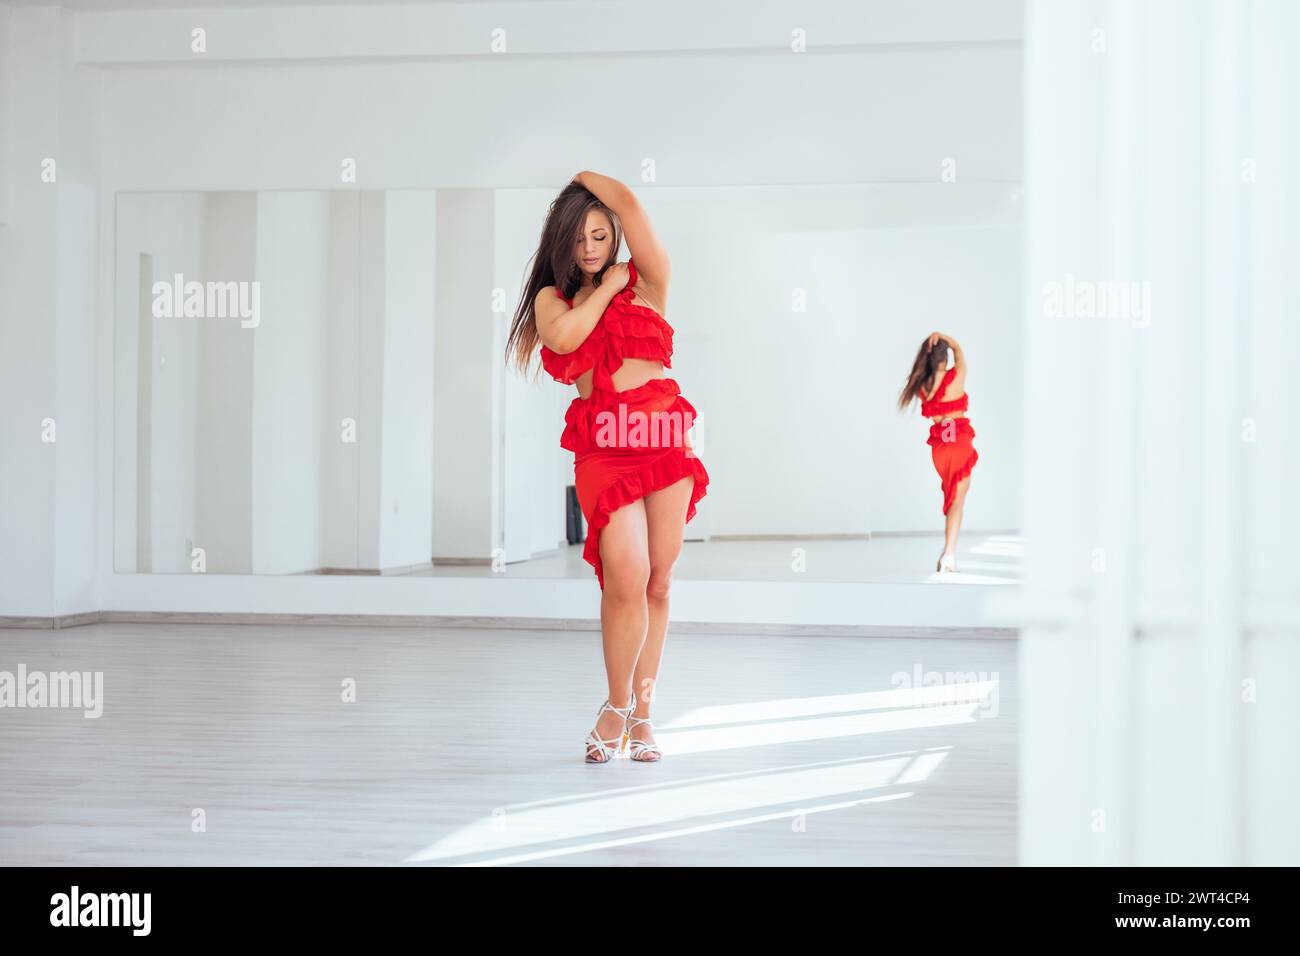 Femme gracieuse habillée en robe de danse latine rouge faisant des pas de danse élégants dans la grande salle de couleur blanche avec grand mur miroir. Expressions des gens pendant da Banque D'Images